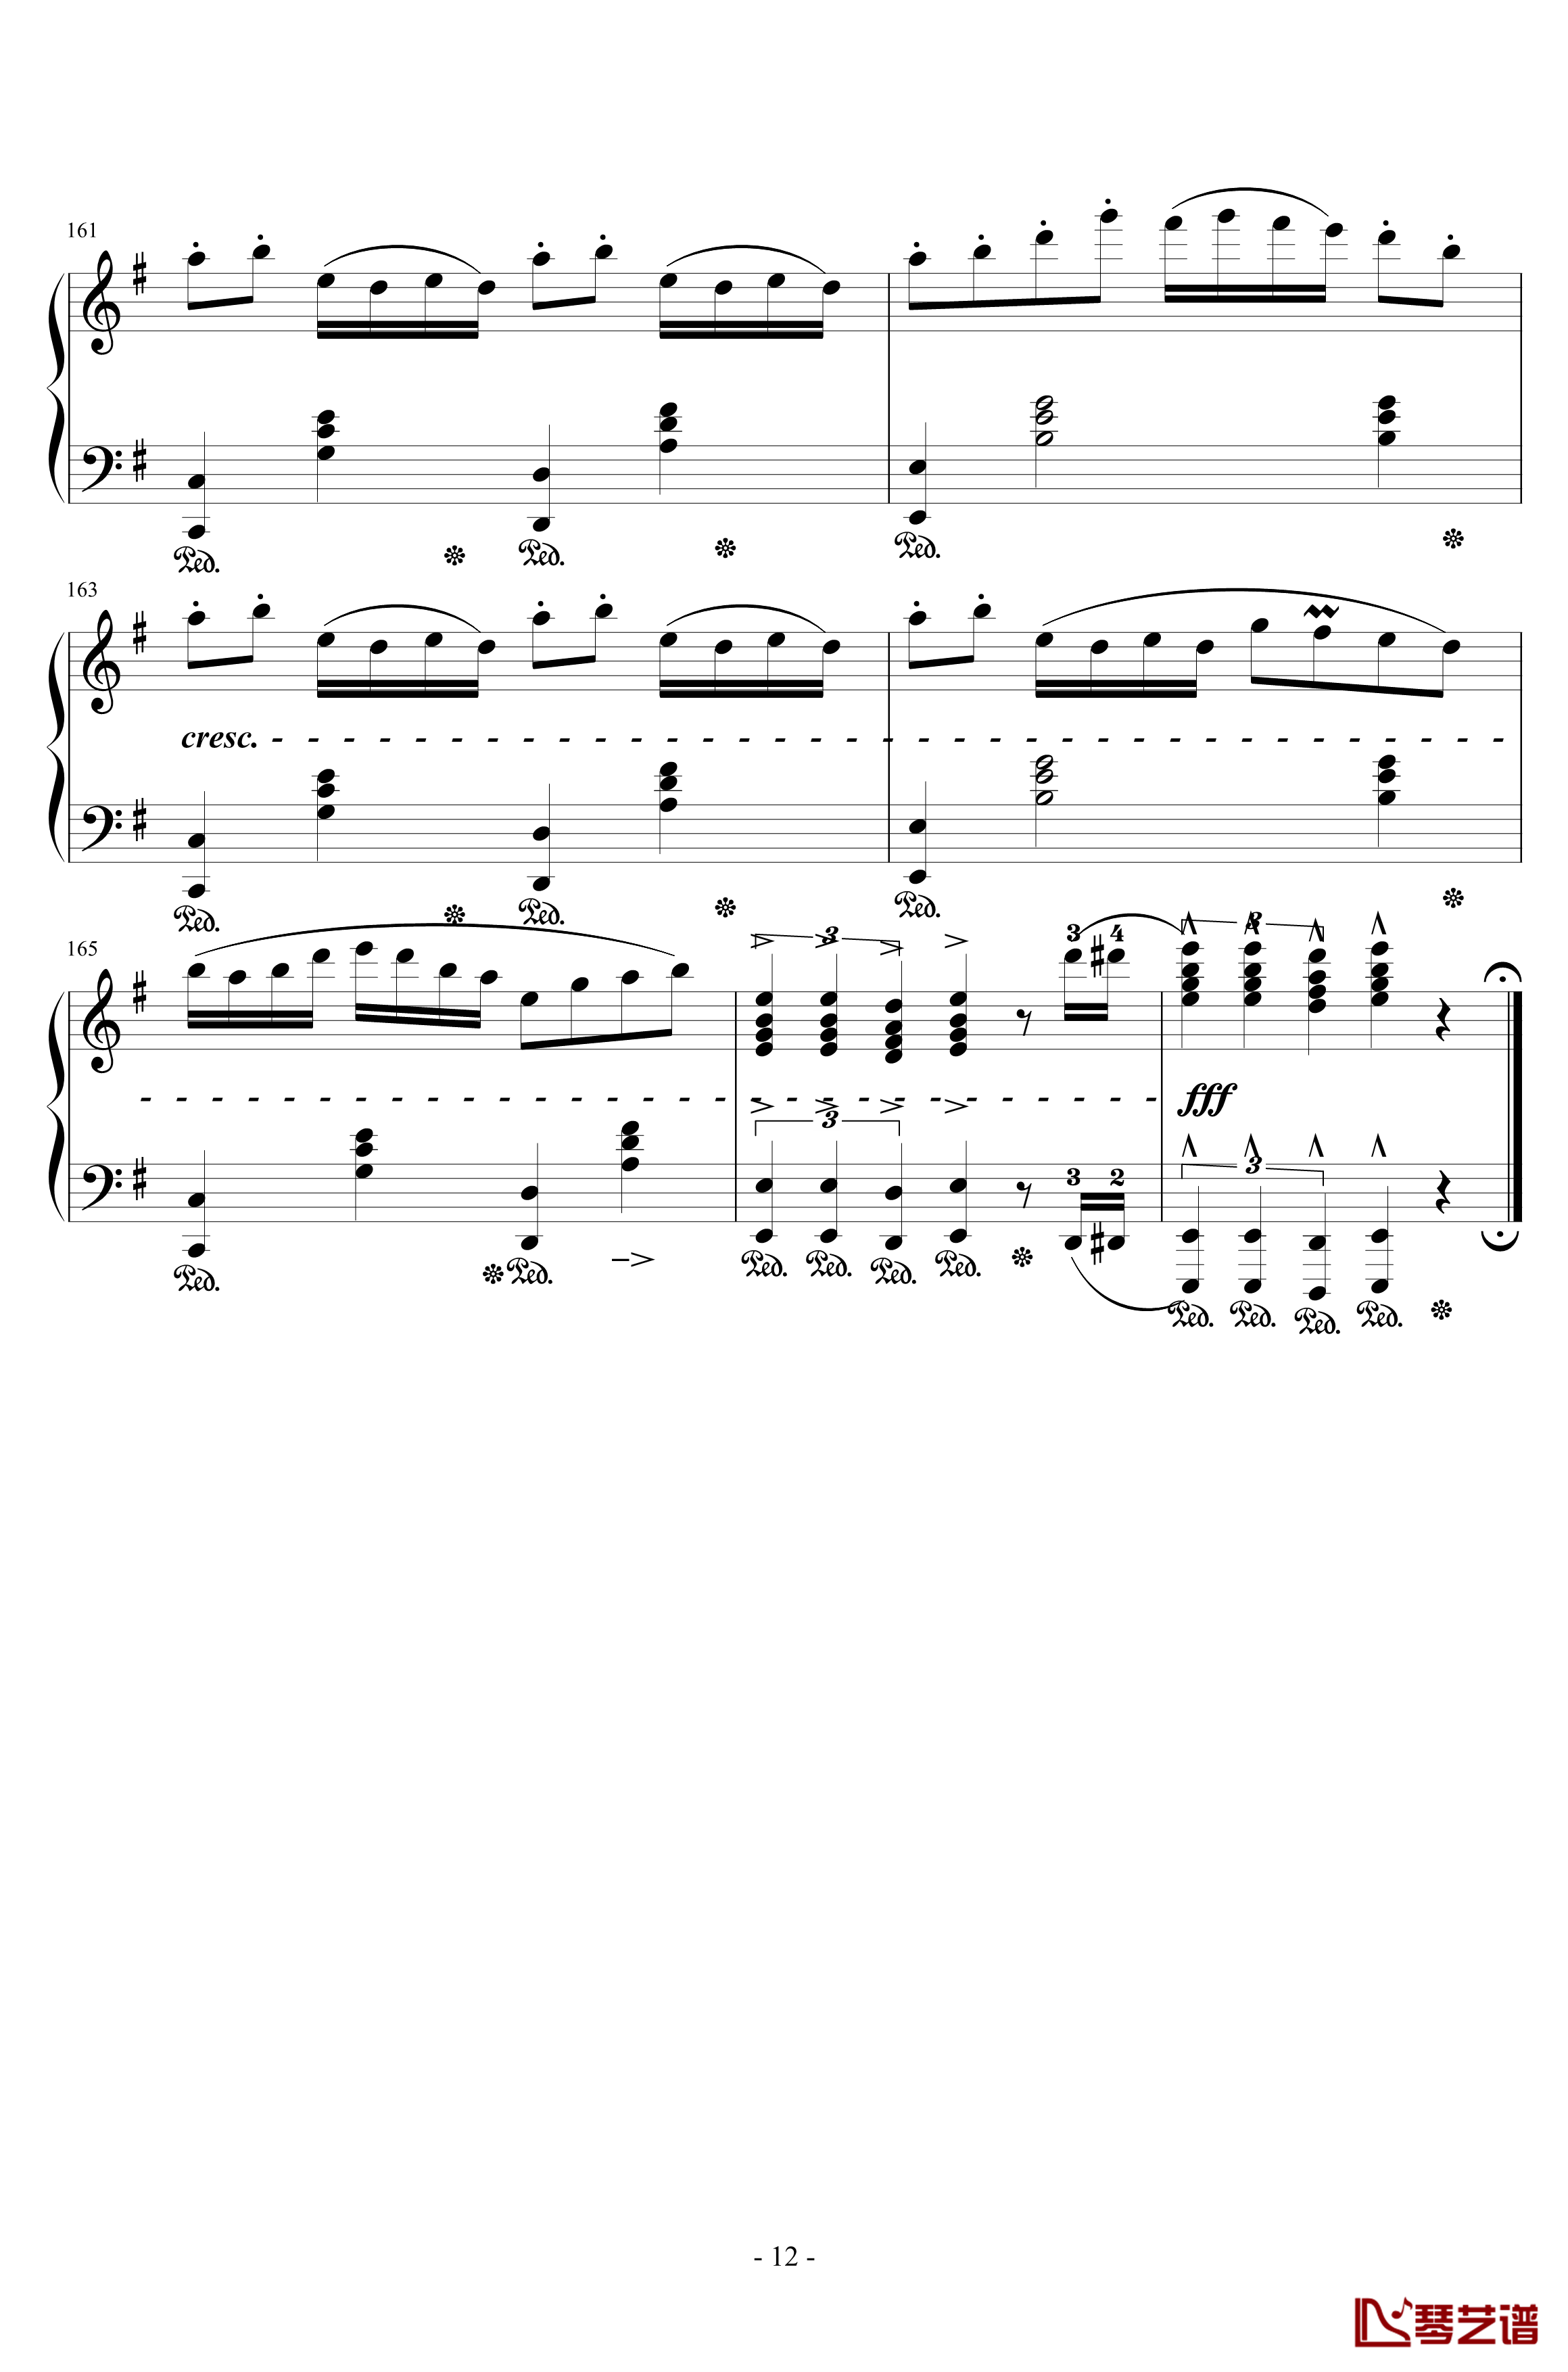 千本樱钢琴谱-交响乐版-初音未来12